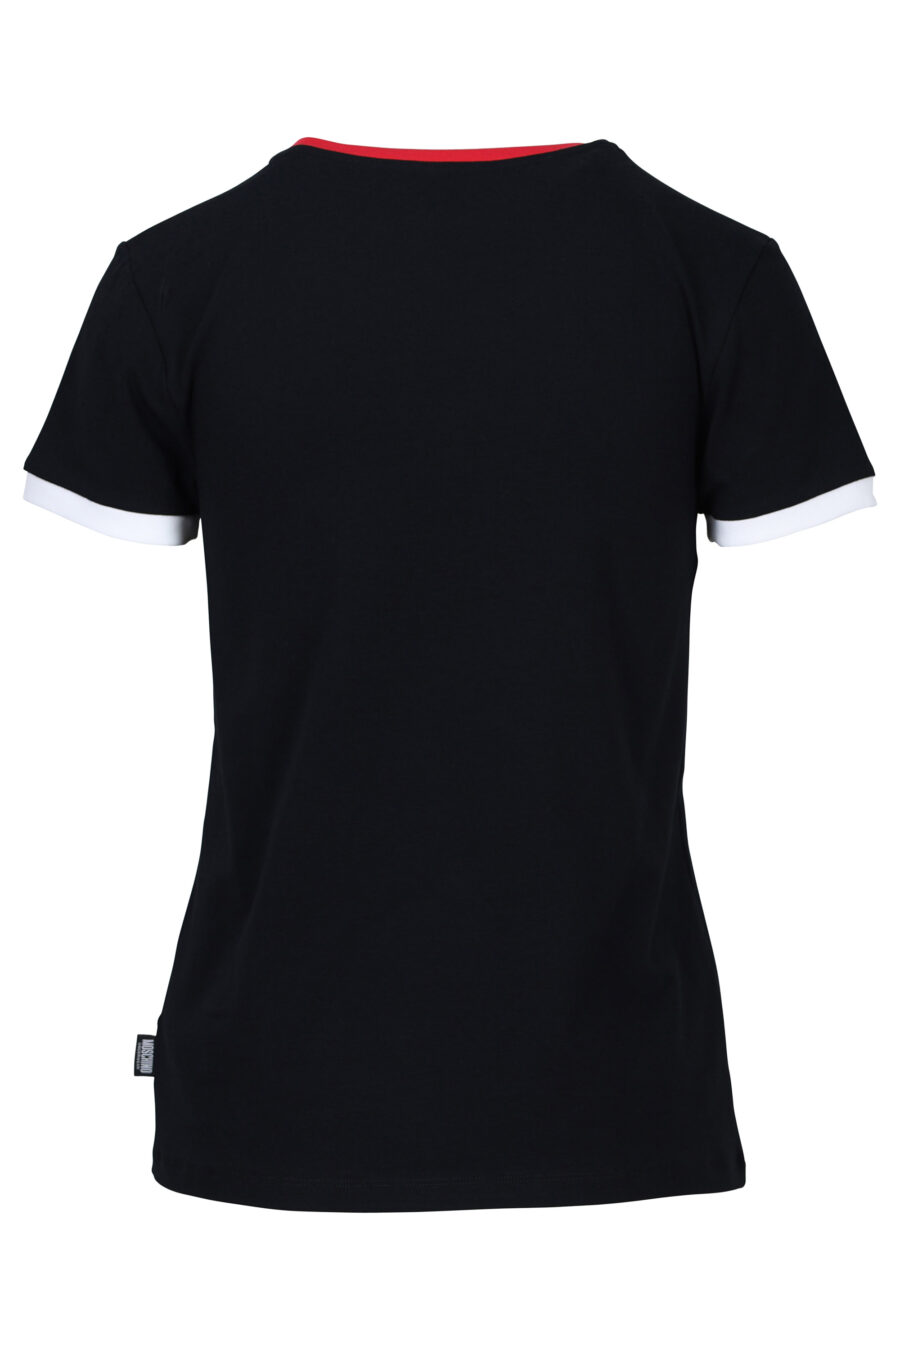 T-Shirt schwarz mit rotem und Bär-Logo "underbear" Patch - 667113062082 1